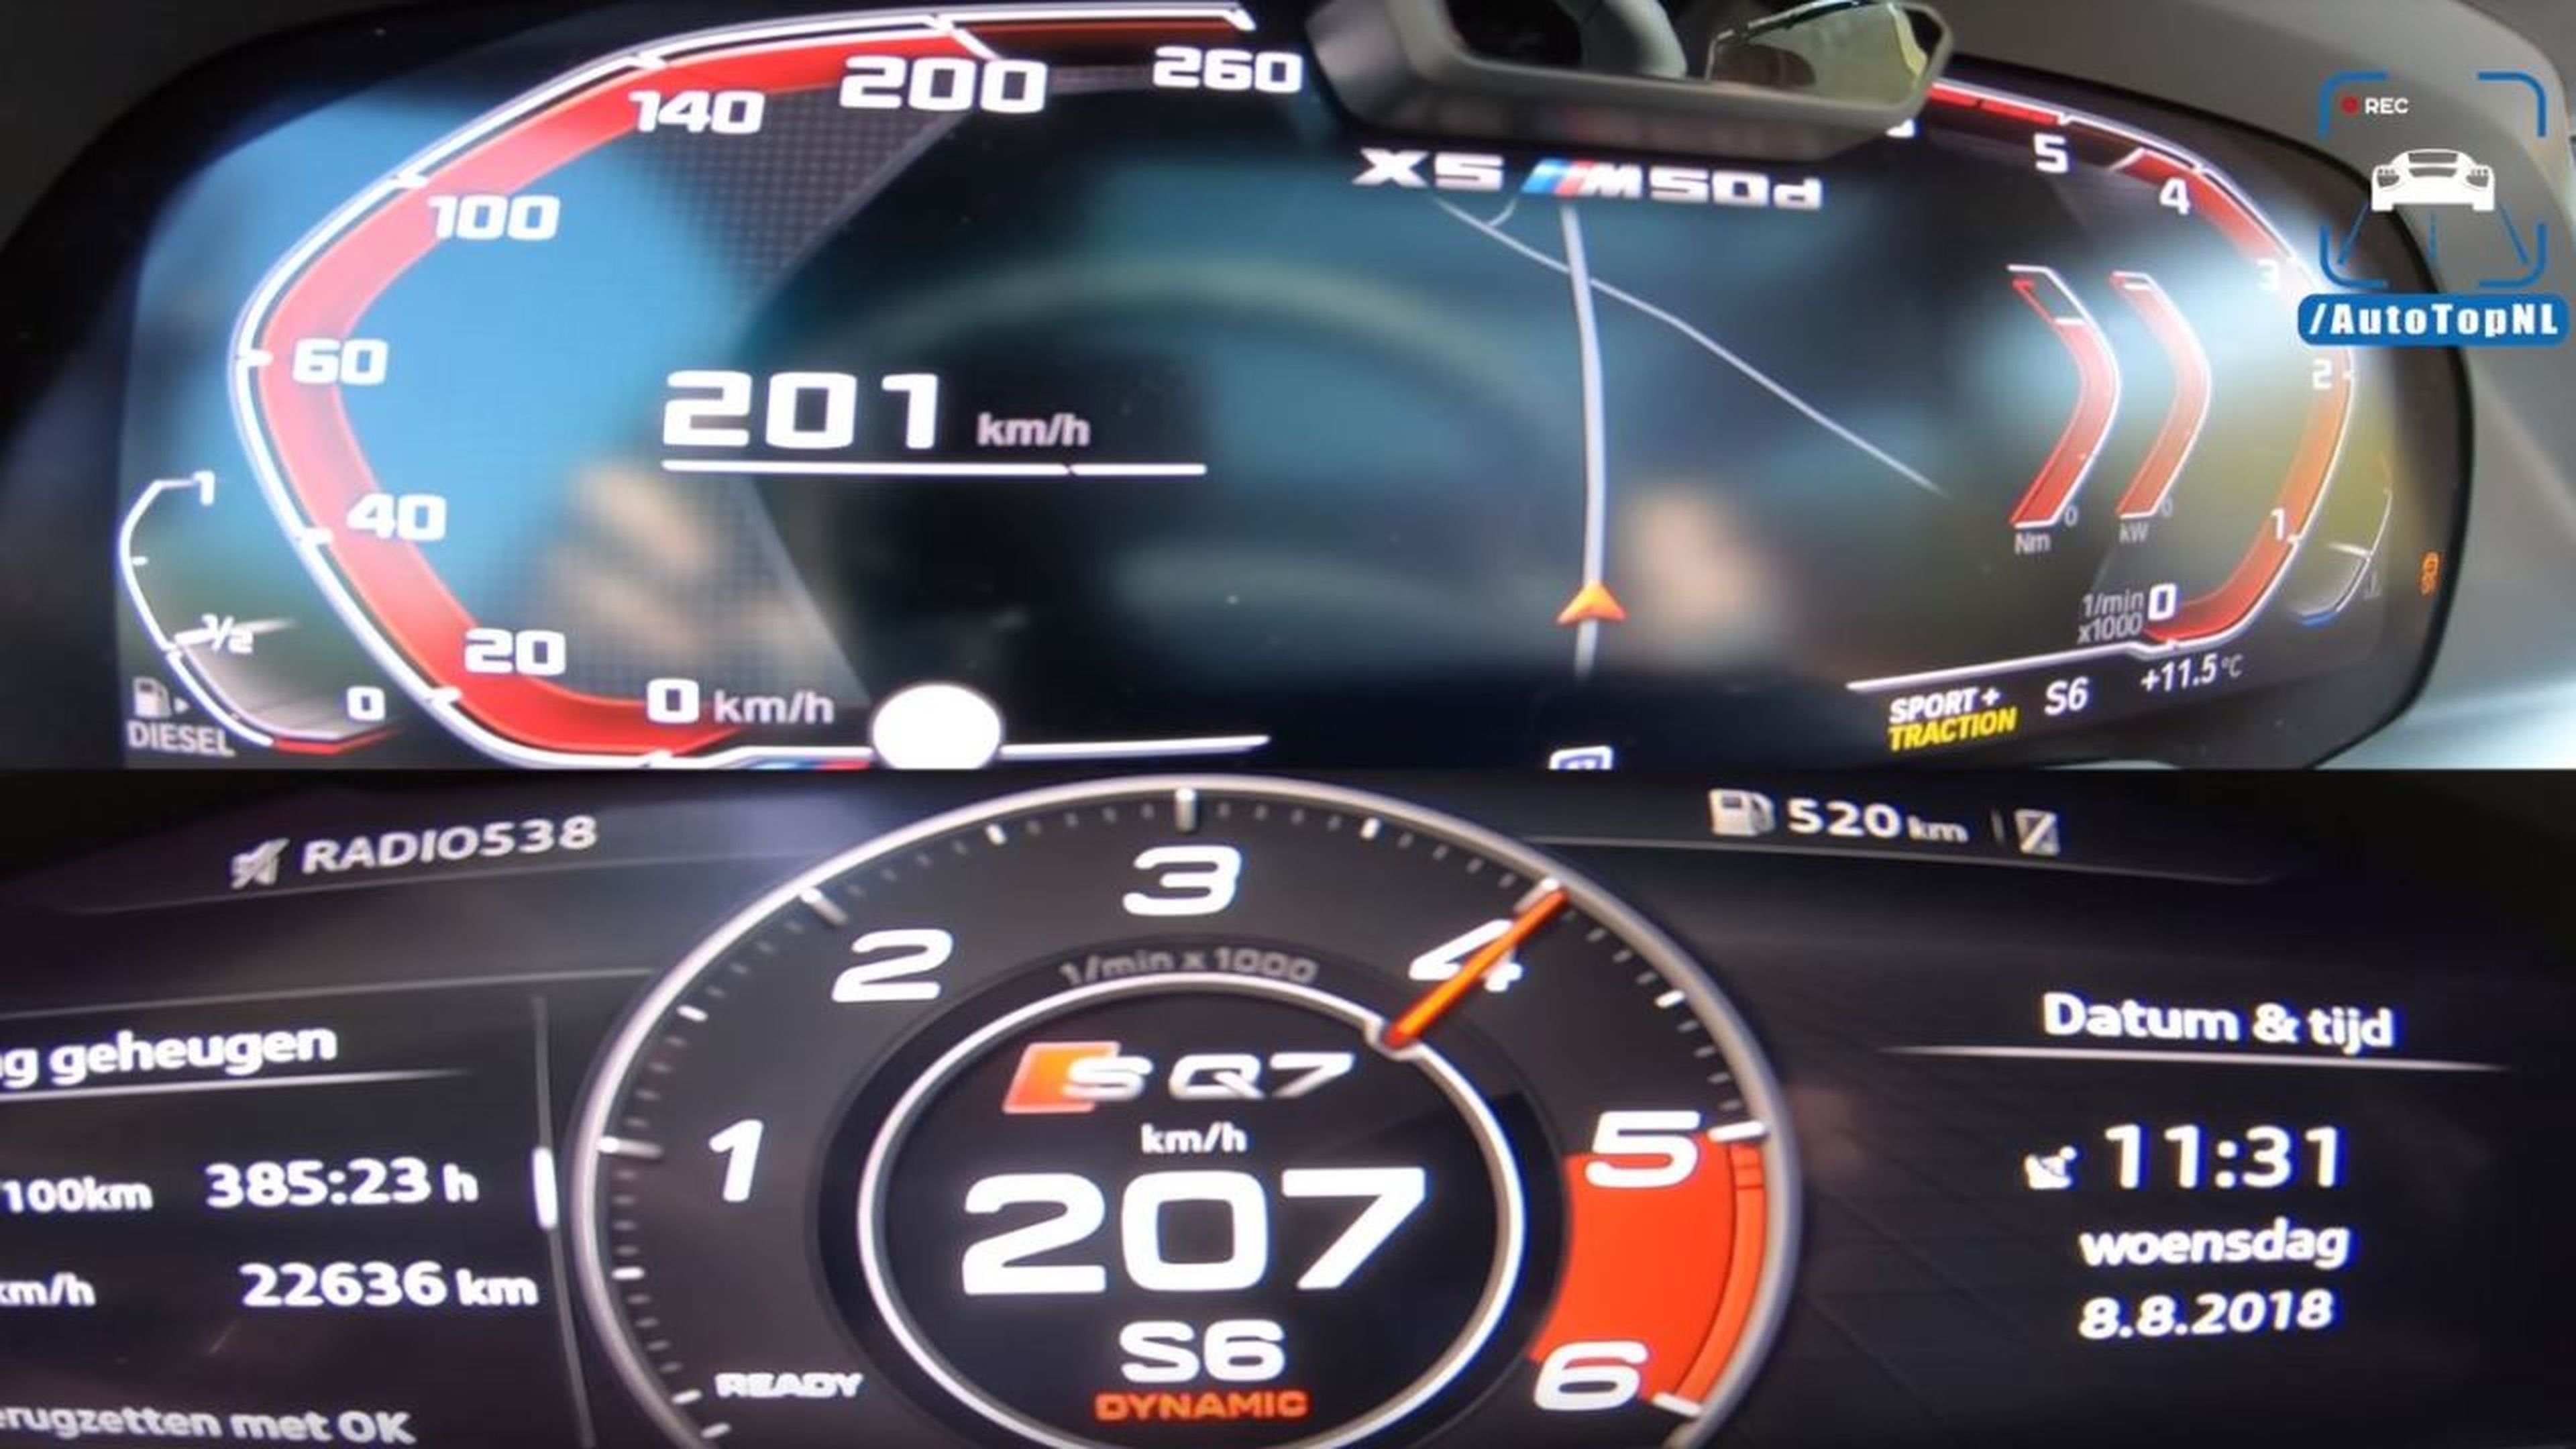 Audi SQ7 vs BMW X5 M50d